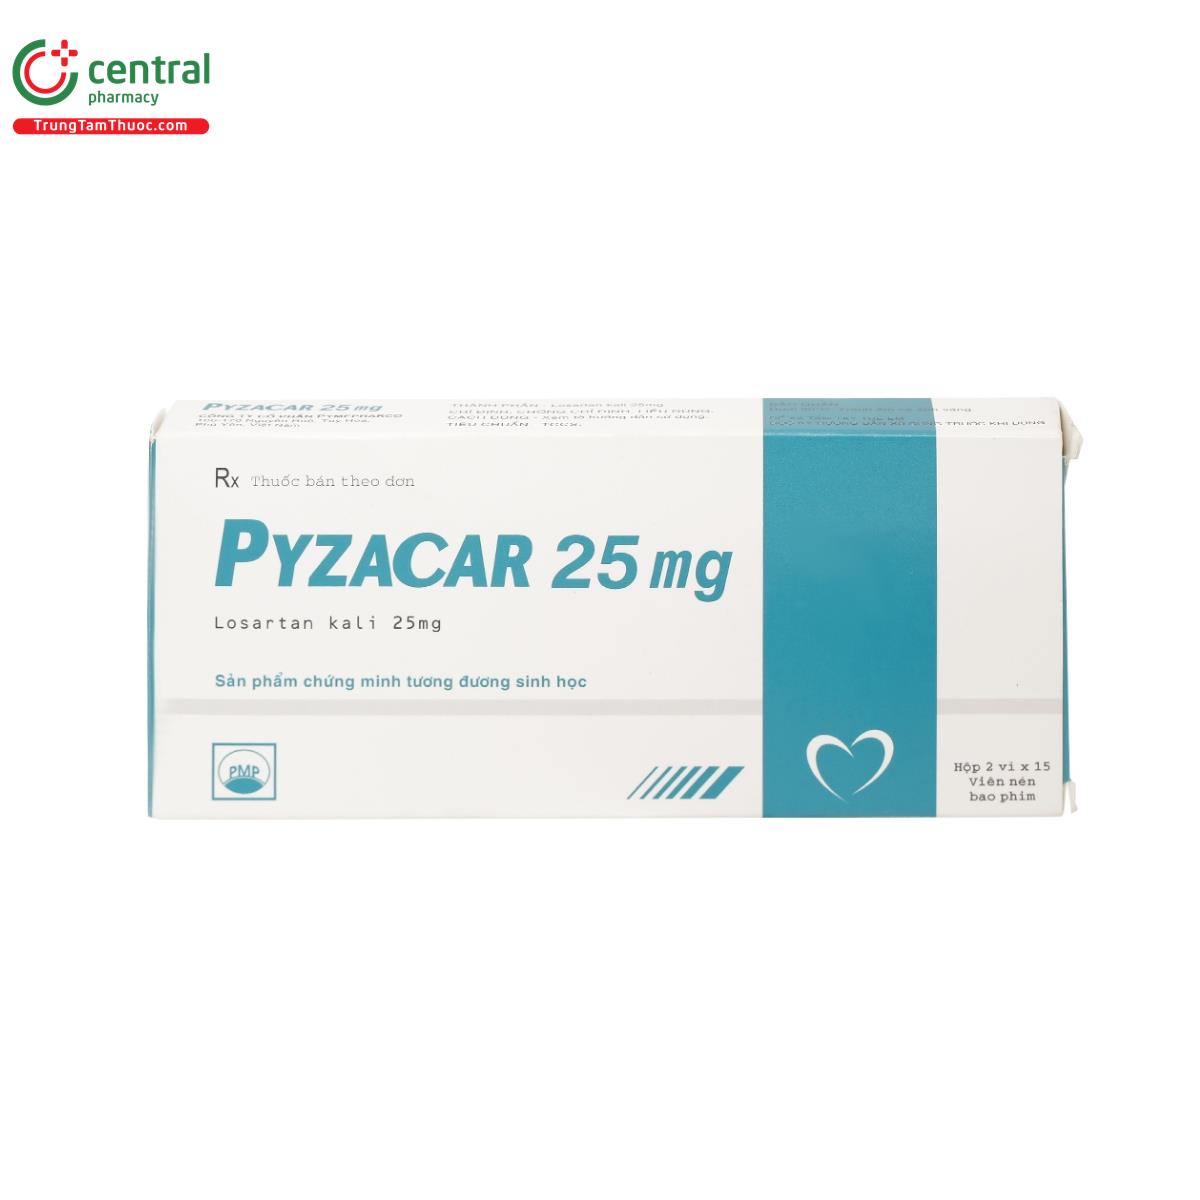 pyzacar 25mg 2 M4888